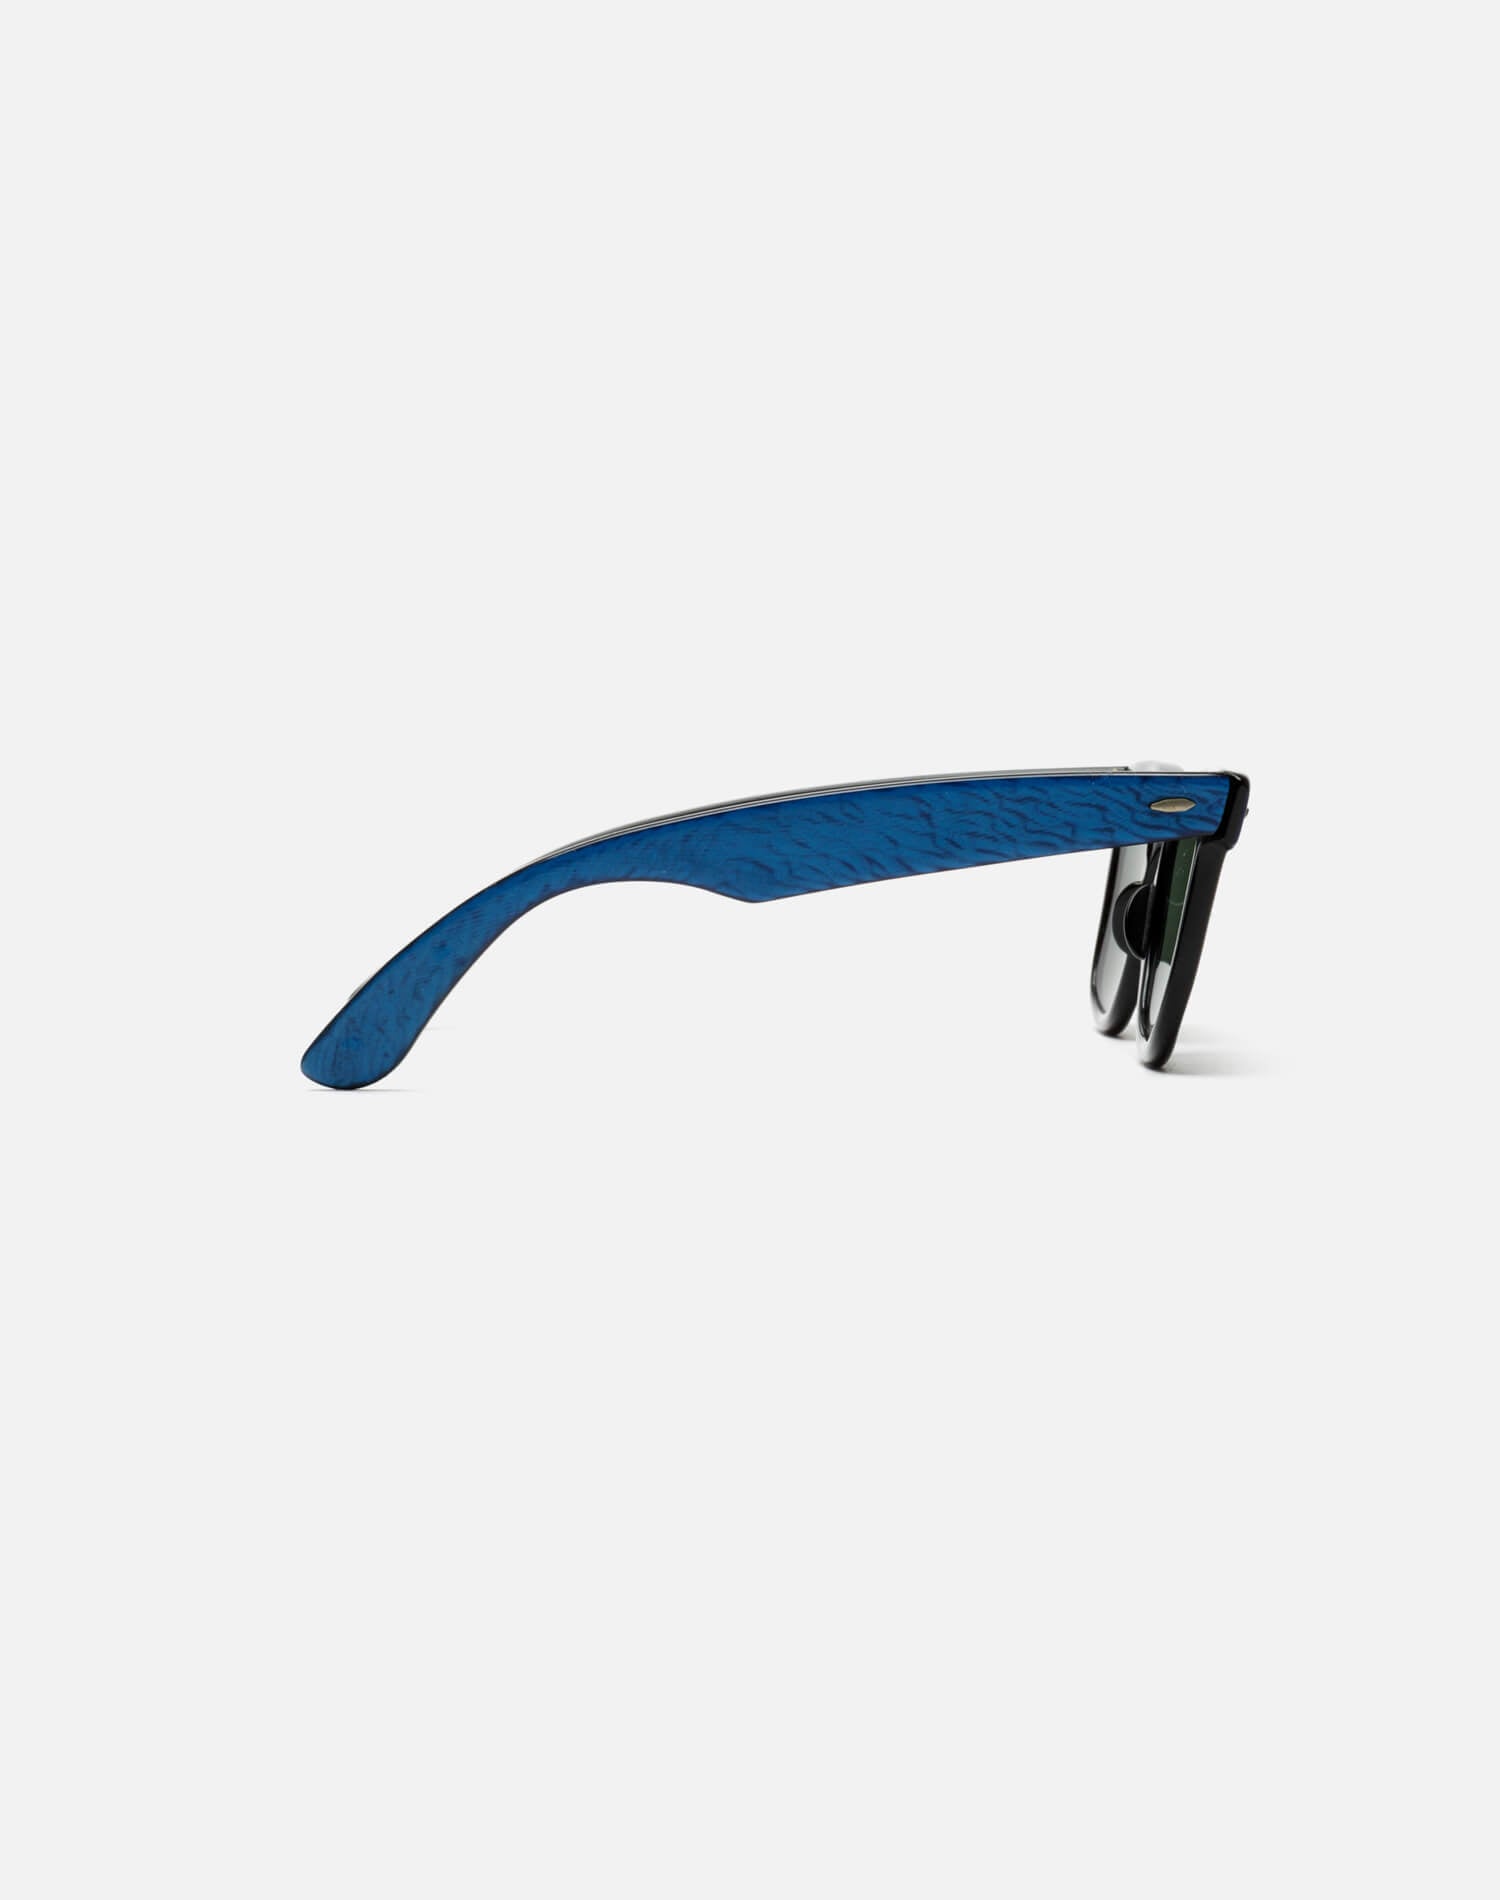 60s Bausch & Lomb Wayfarer Sunglasses